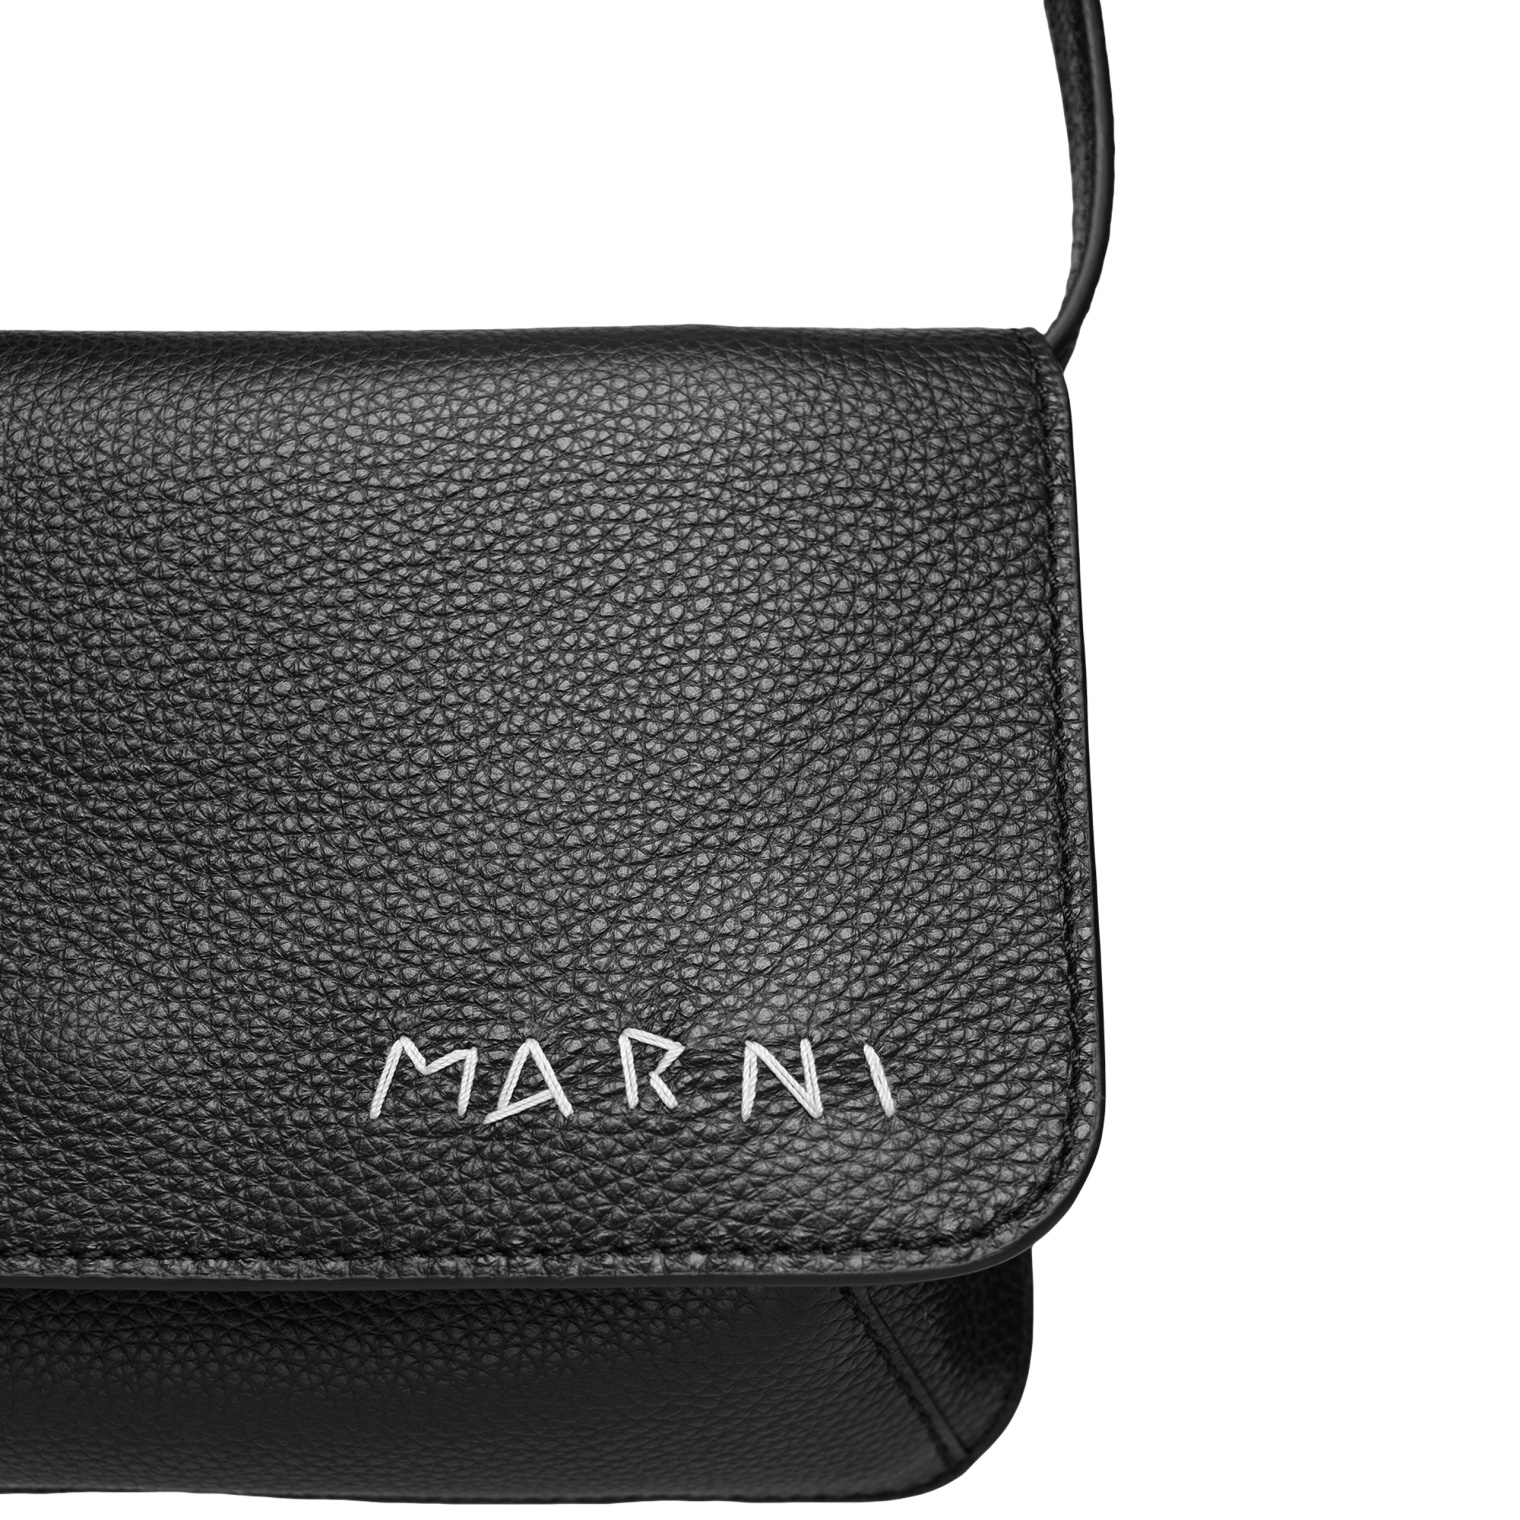 Marni Black hand-stitched bag